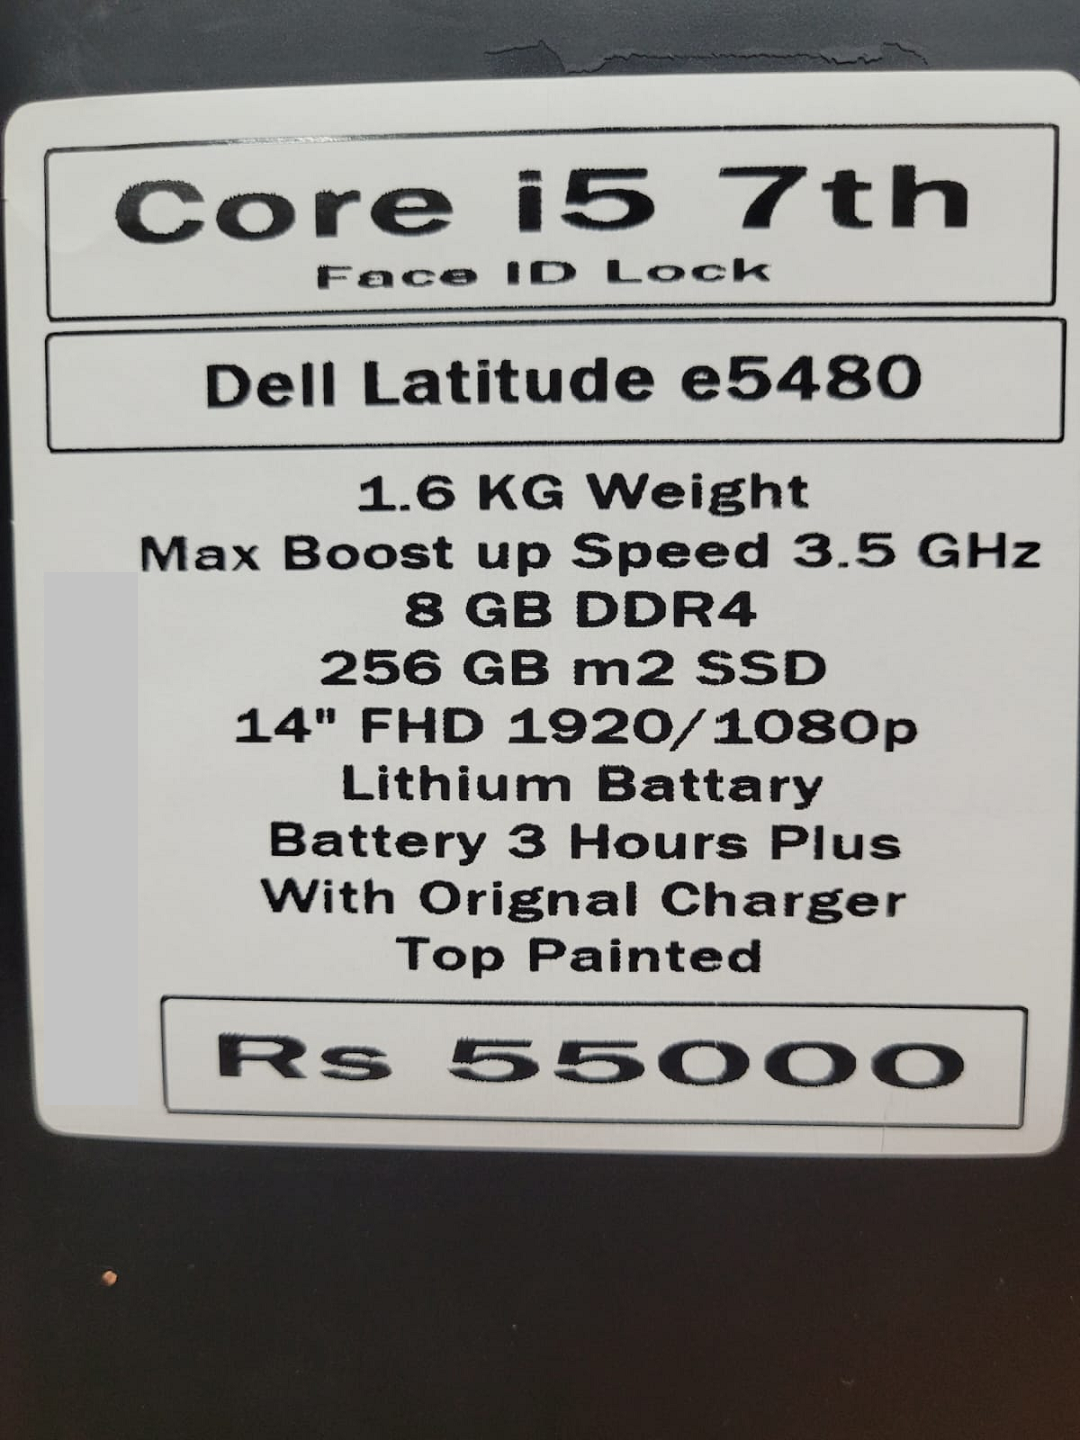 Laptop Dell latitude e5480 core i5 7th Generation price in pakistan